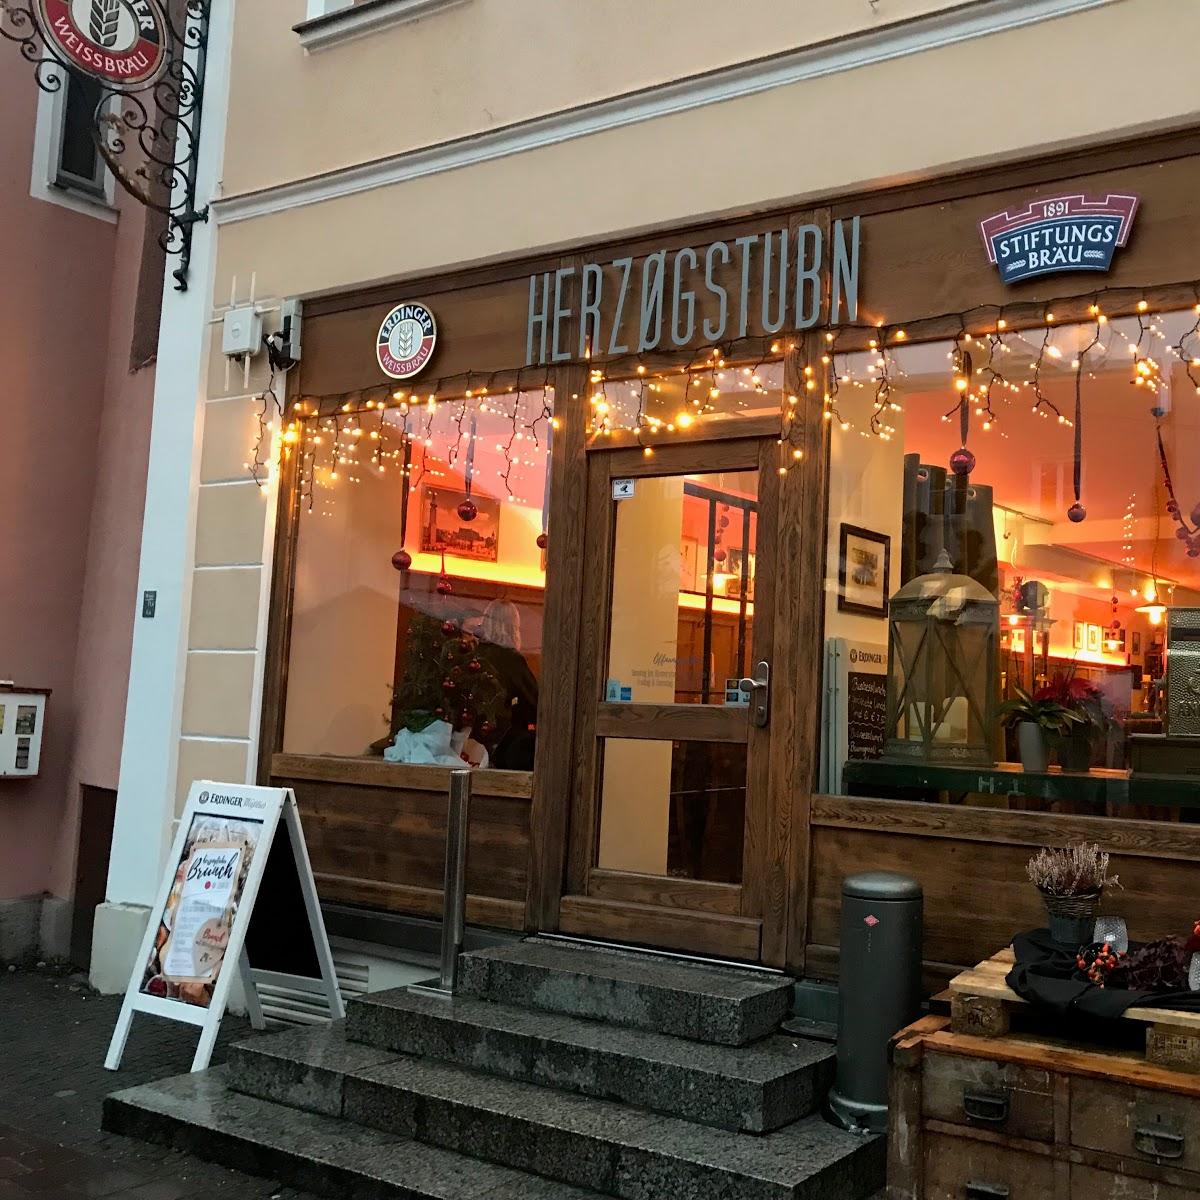 Restaurant "Herzogstubn" in  Erding